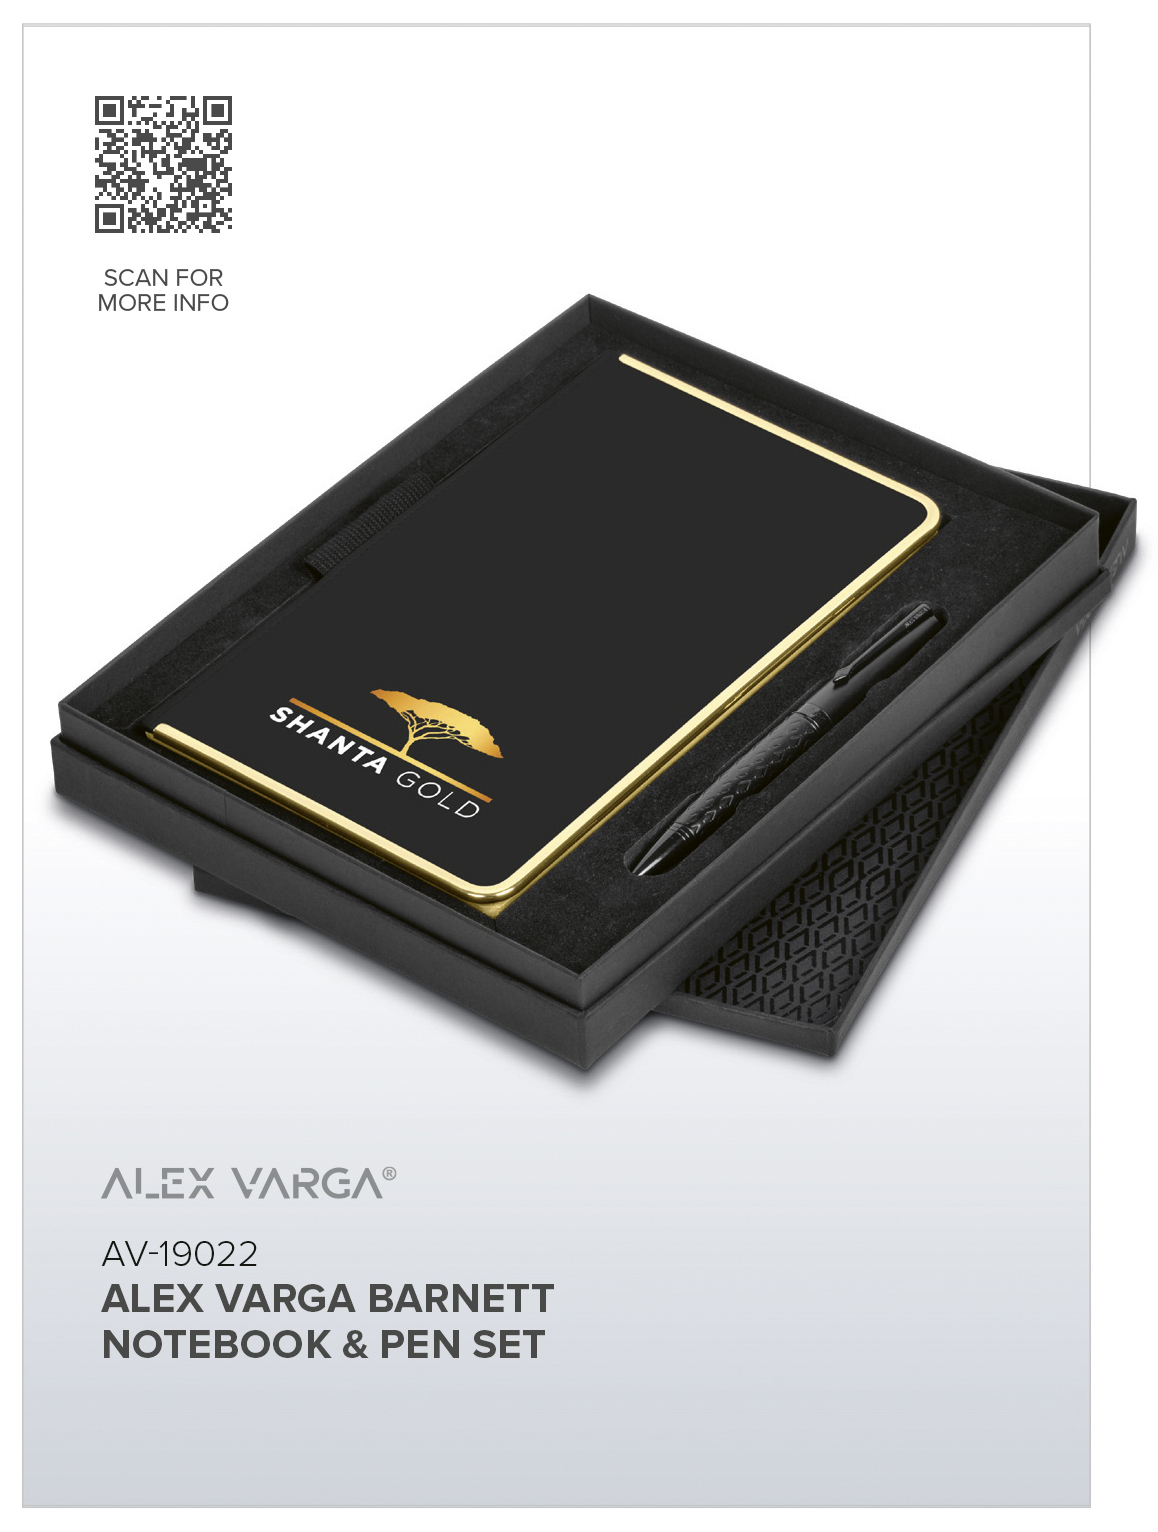 AV-19022 - Alex Varga Barnett Notebook & Pen Set - Catalogue Image